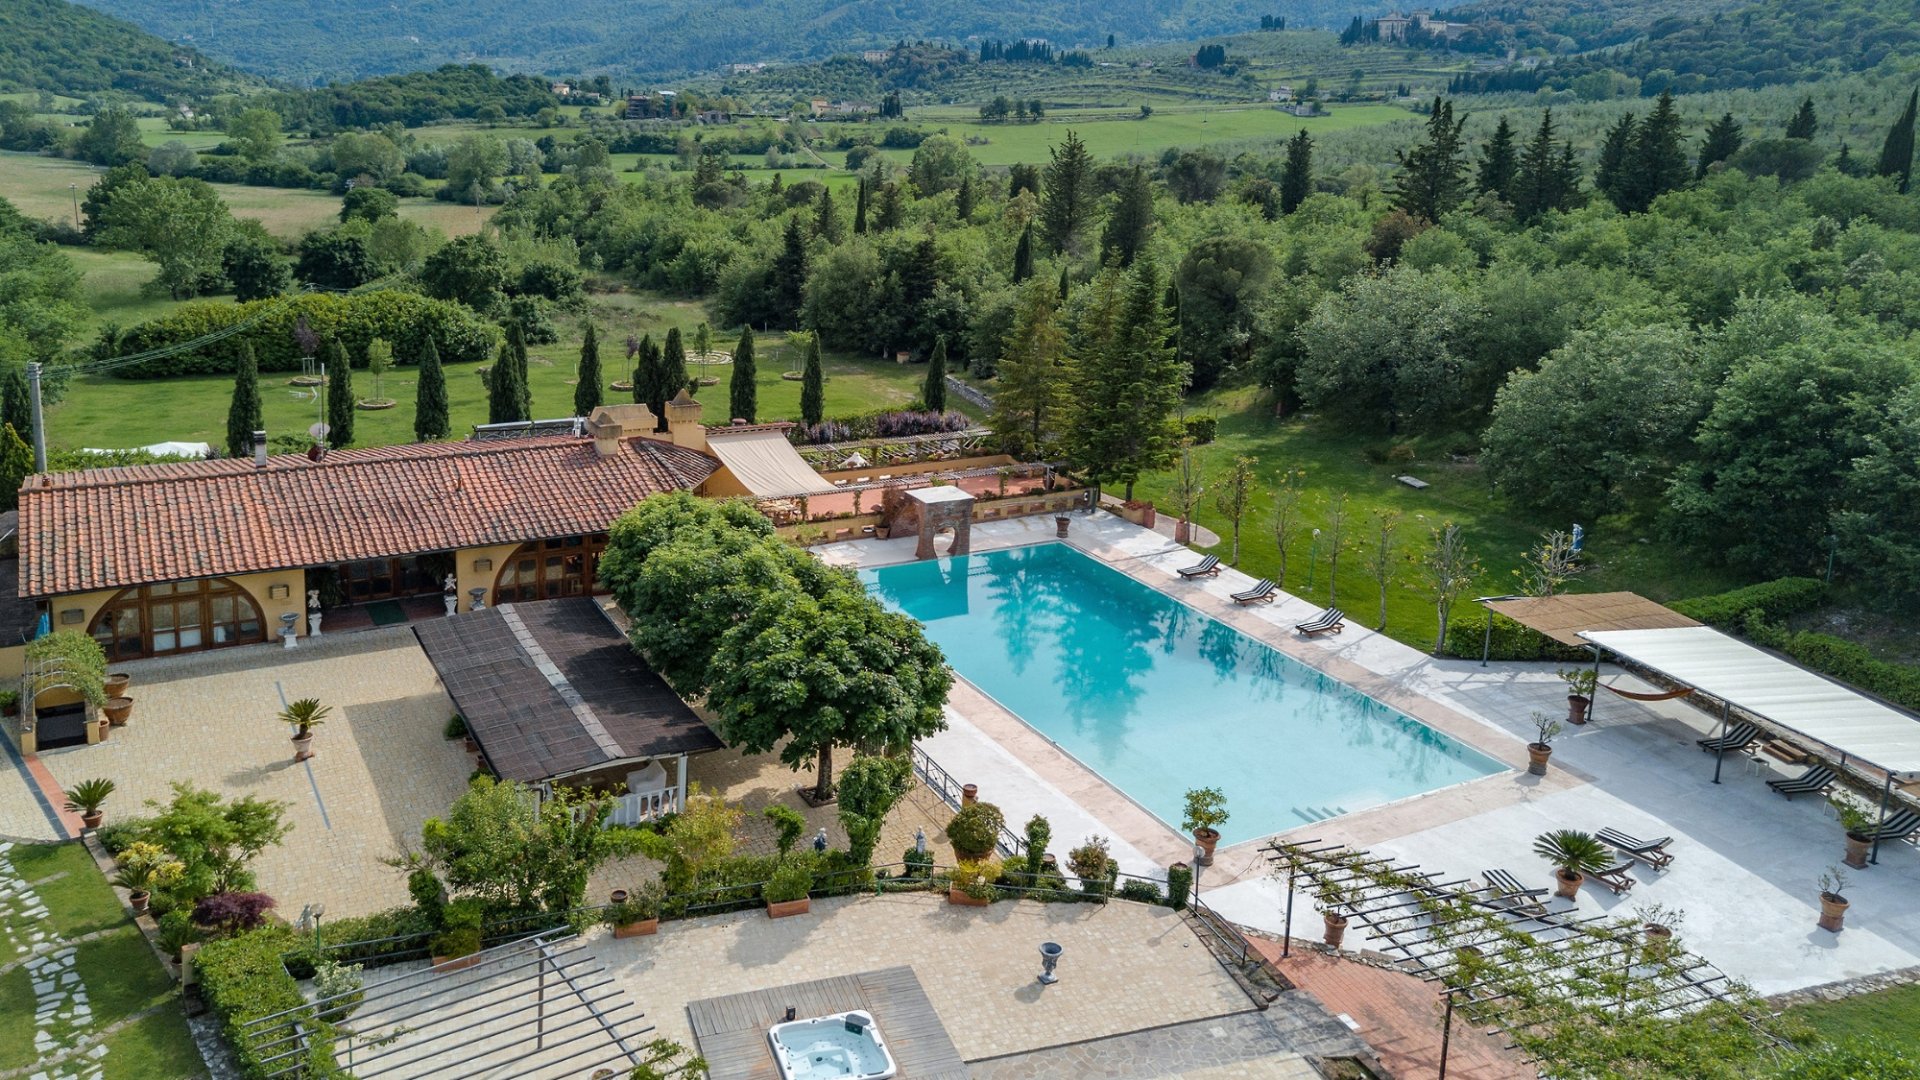 La tua vacanza breve nell'ambiente esclusivo di Villa Gaudia, nel cuore del Chianti a pochi chilometri da Firenze